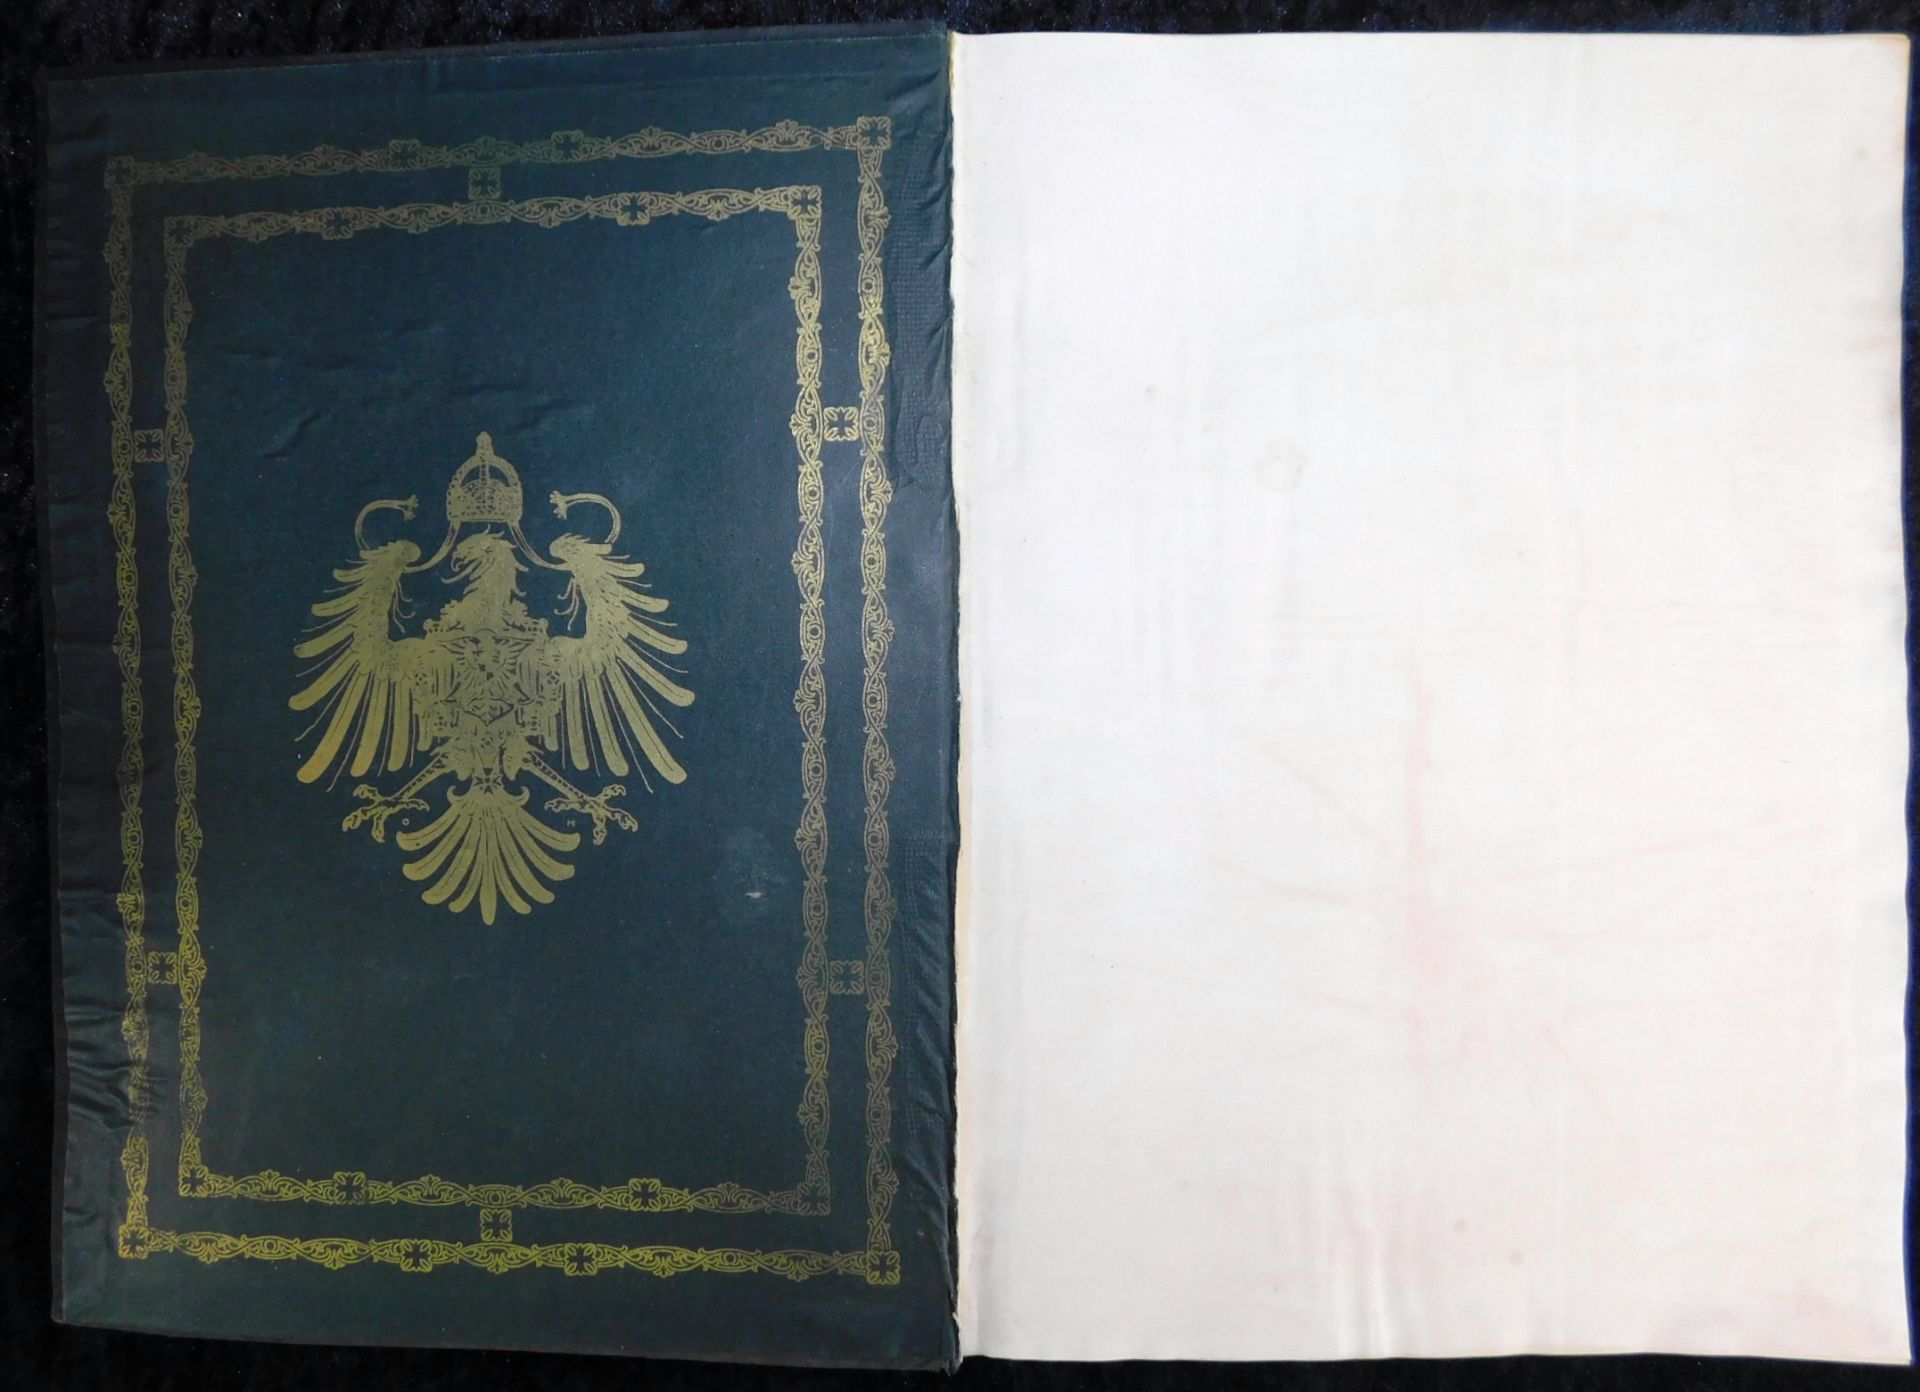 Großes Ehrenbuch 1914, Familienstammbuch, Verlag Joh.E.Hubens, Diessen/München - Bild 2 aus 7